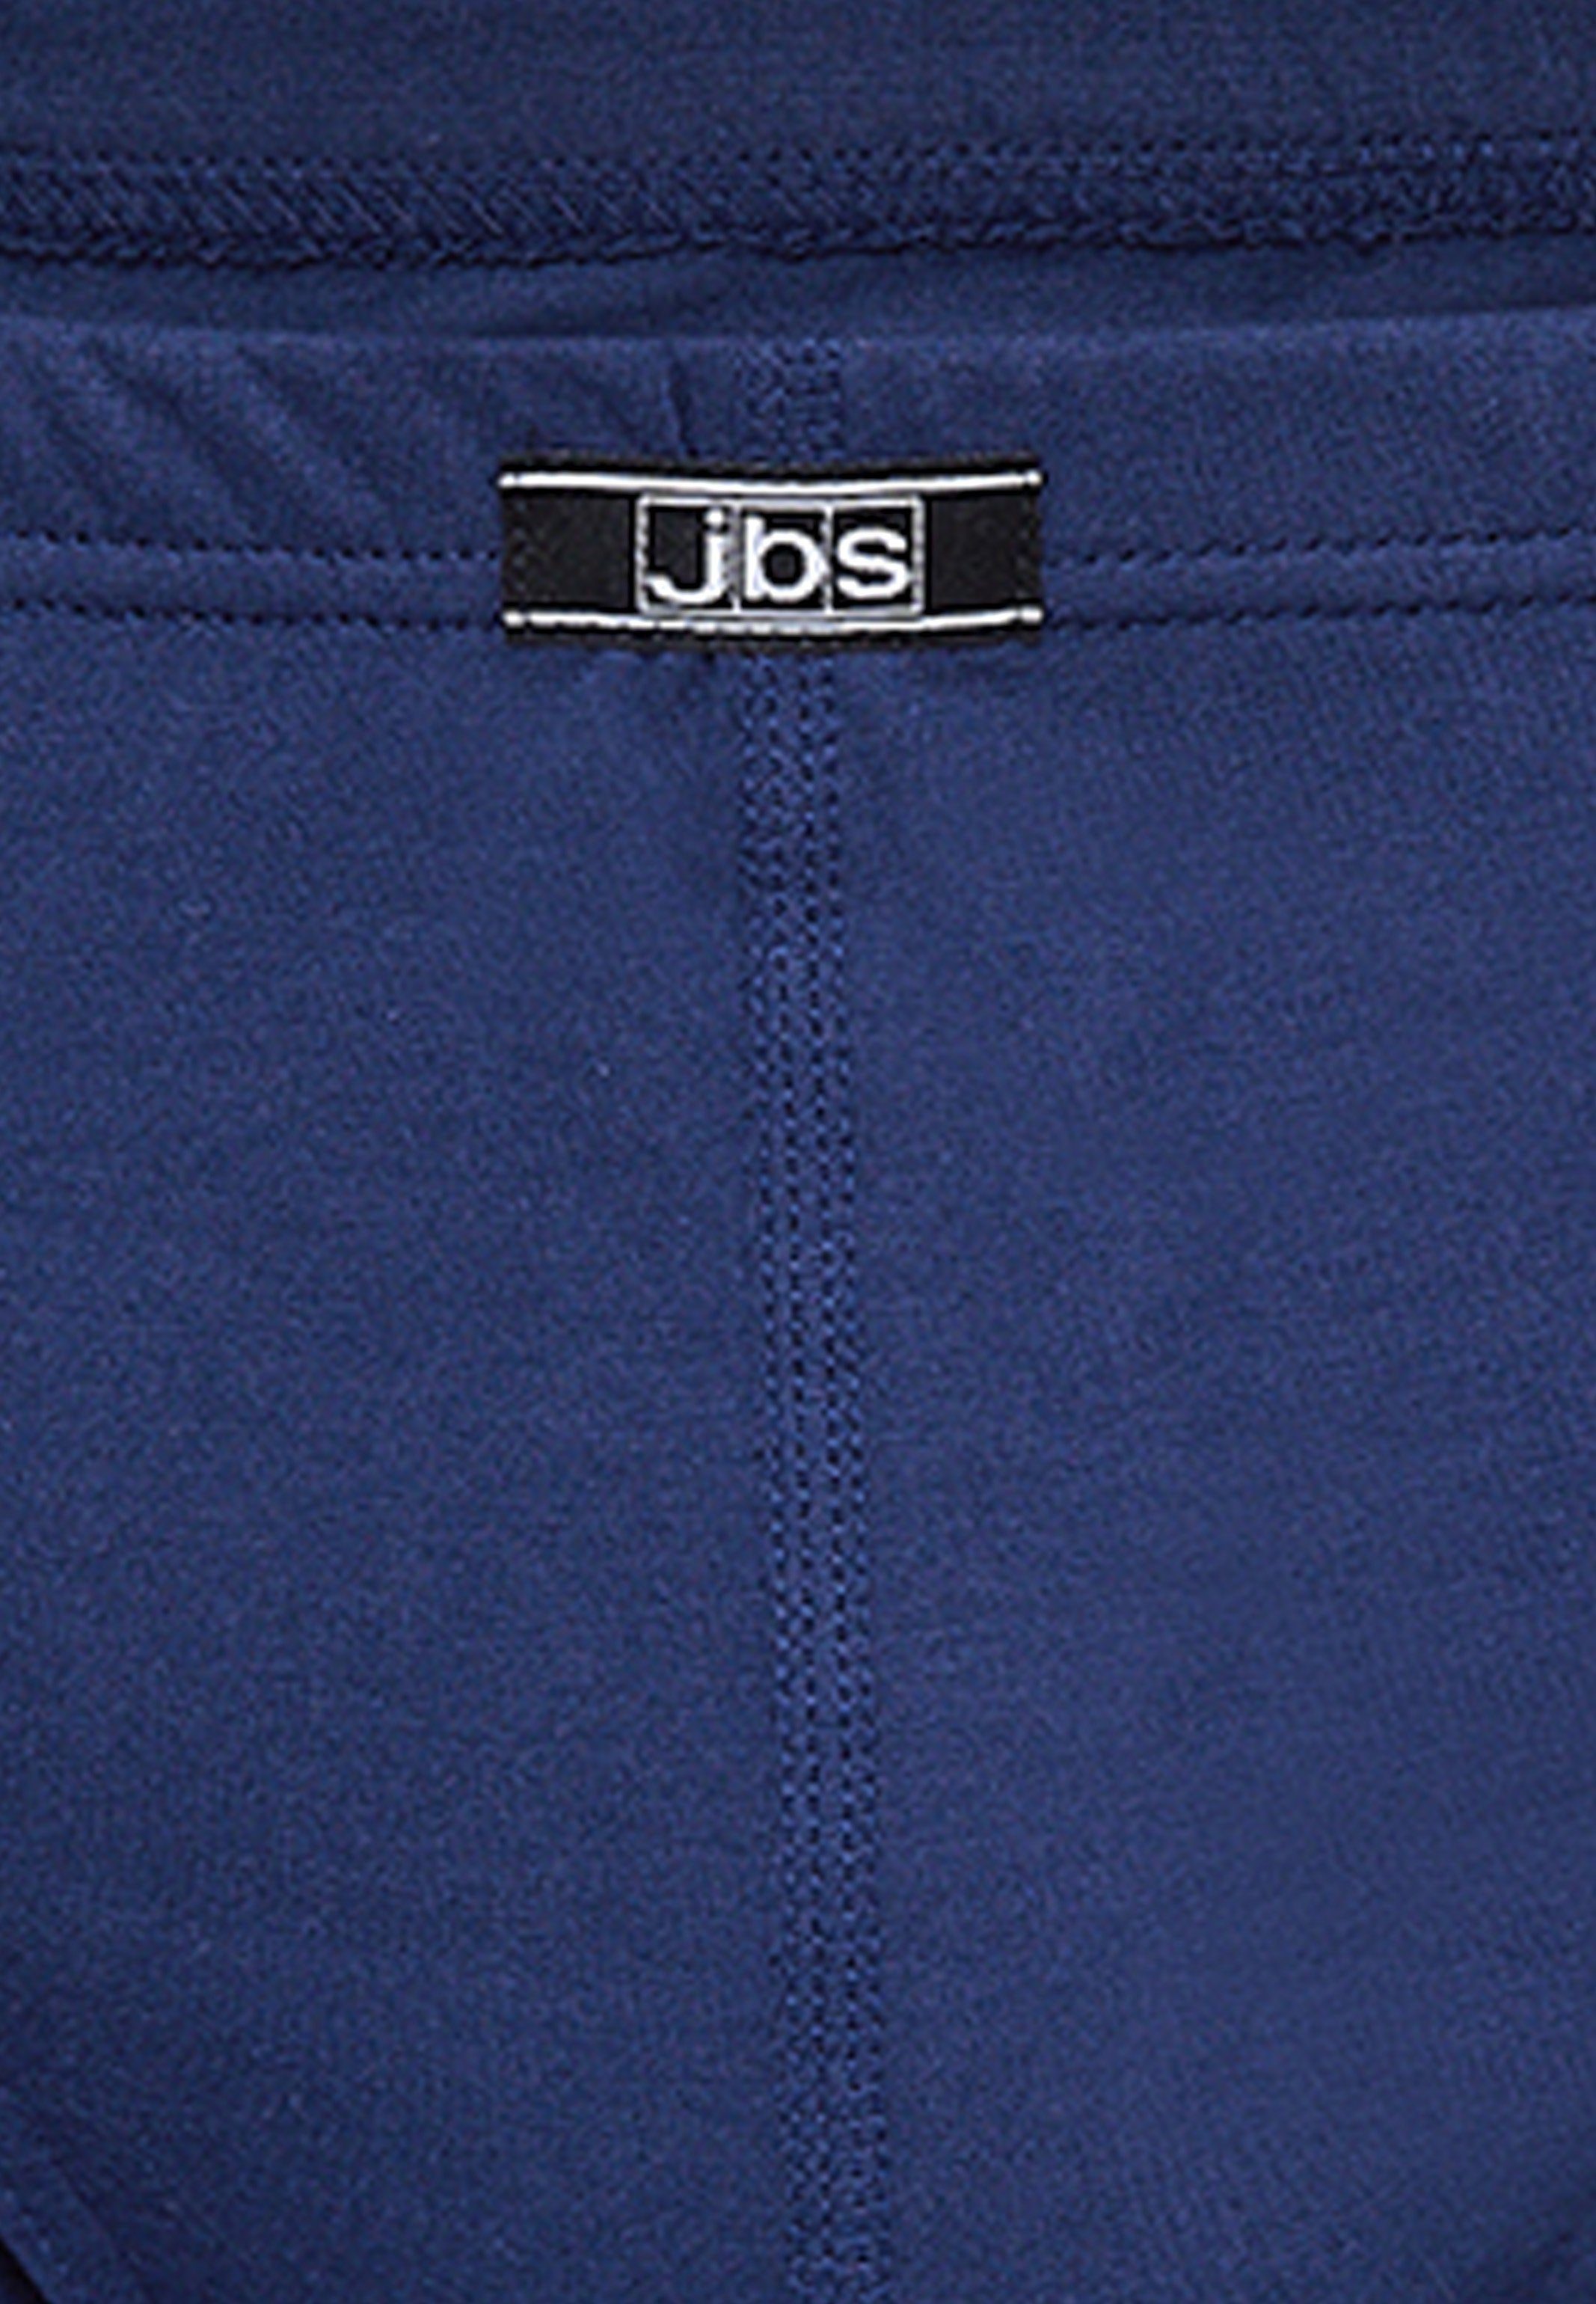 jbs Slip Slip Baumwolle 5-St) - Pack Cotton Ohne Eingriff Unterhose (Spar-Set, Organic / Marine Mini Atmungsaktiv - - 5er